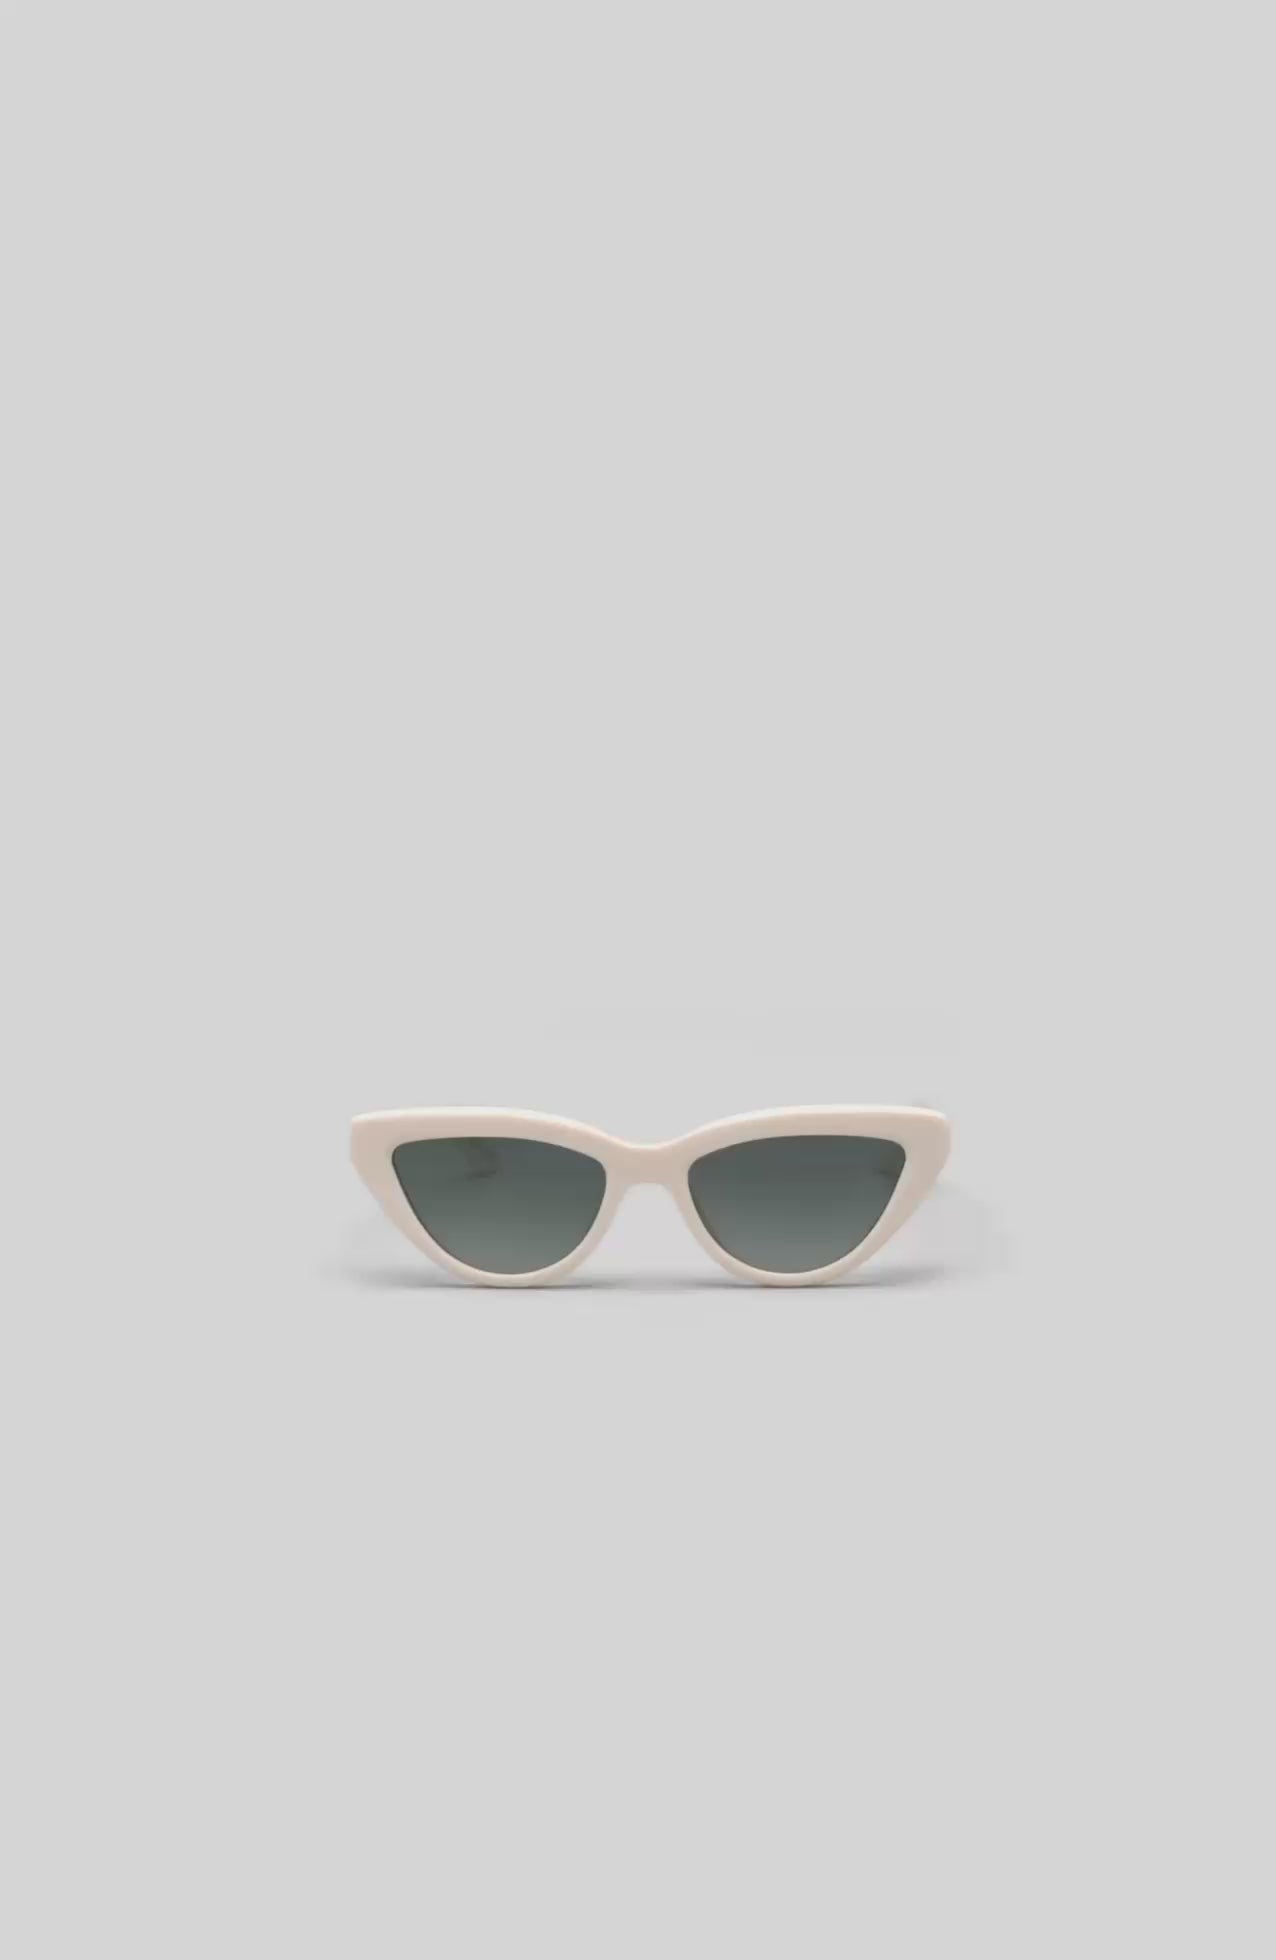 ANINE BING Sedona Sunglasses - Ivory - 360 Video View